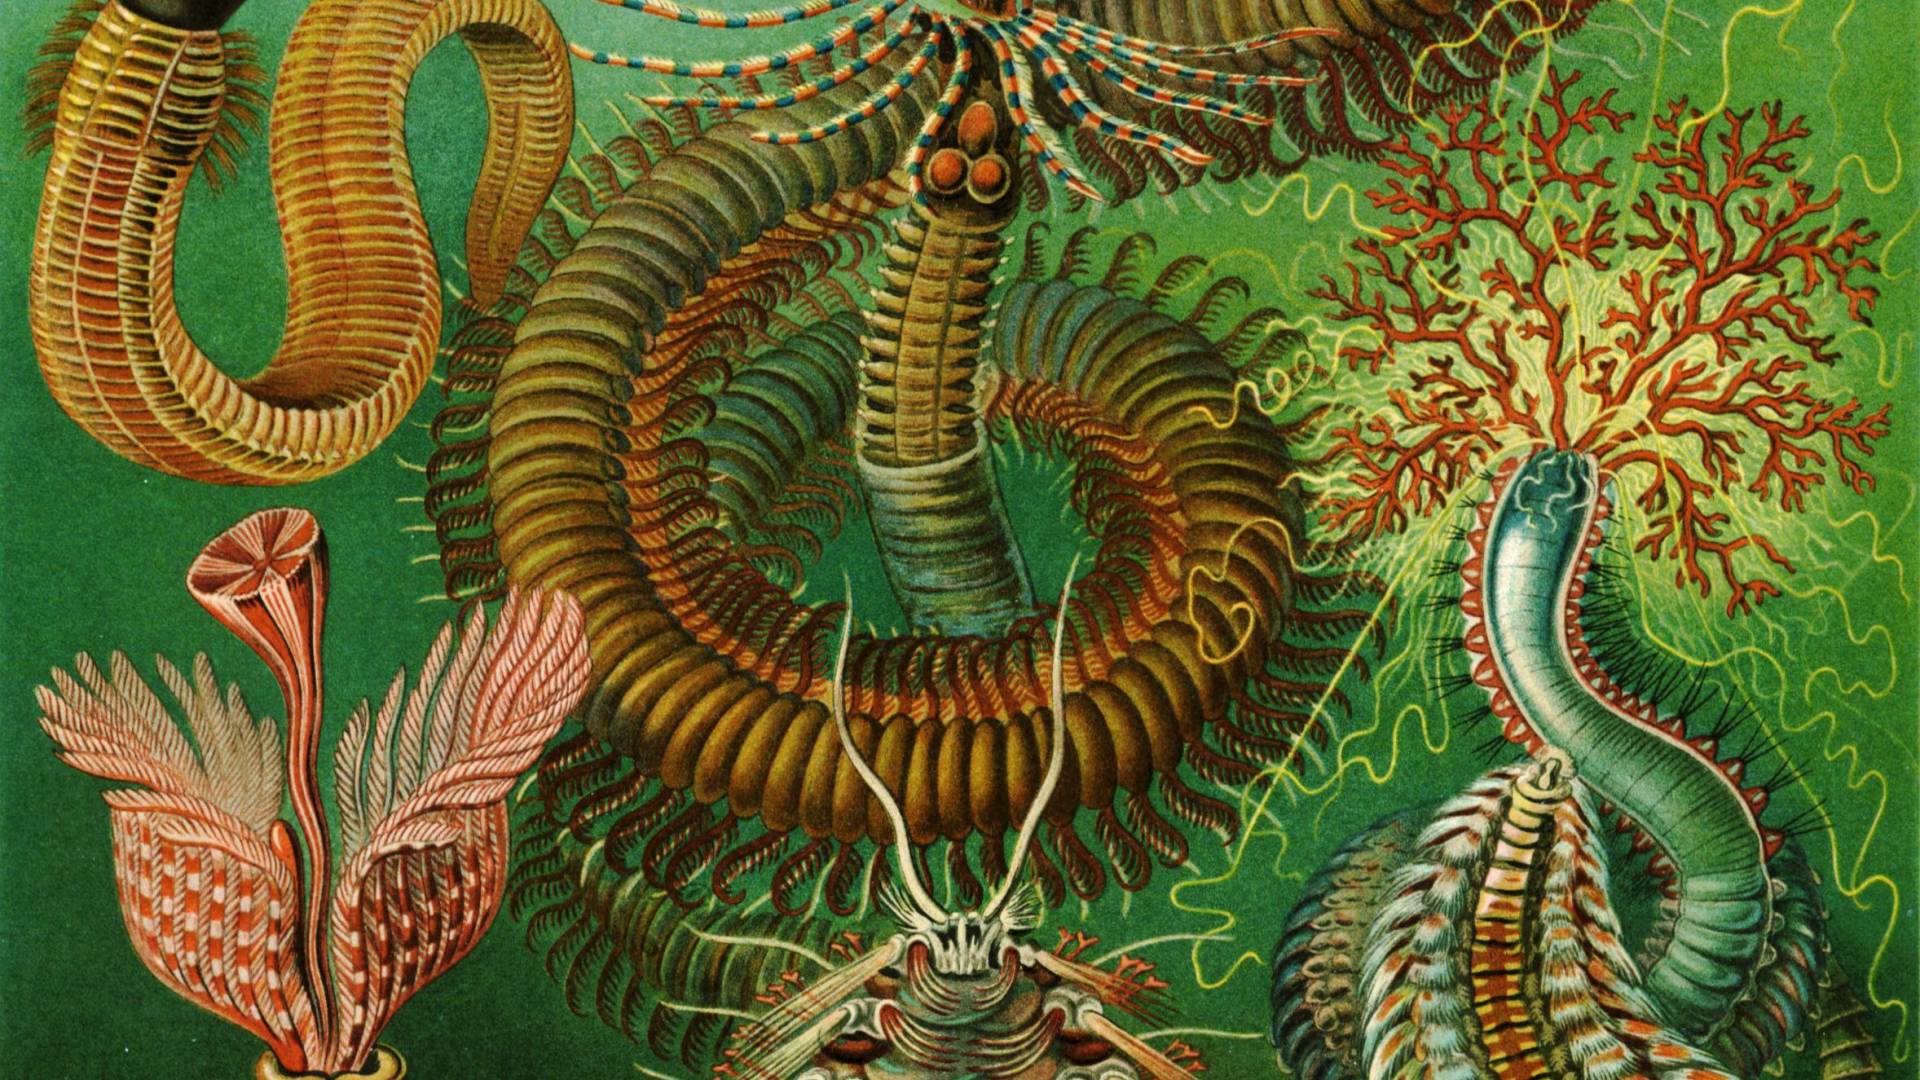 Scientific illustration by Ernst Haeckel